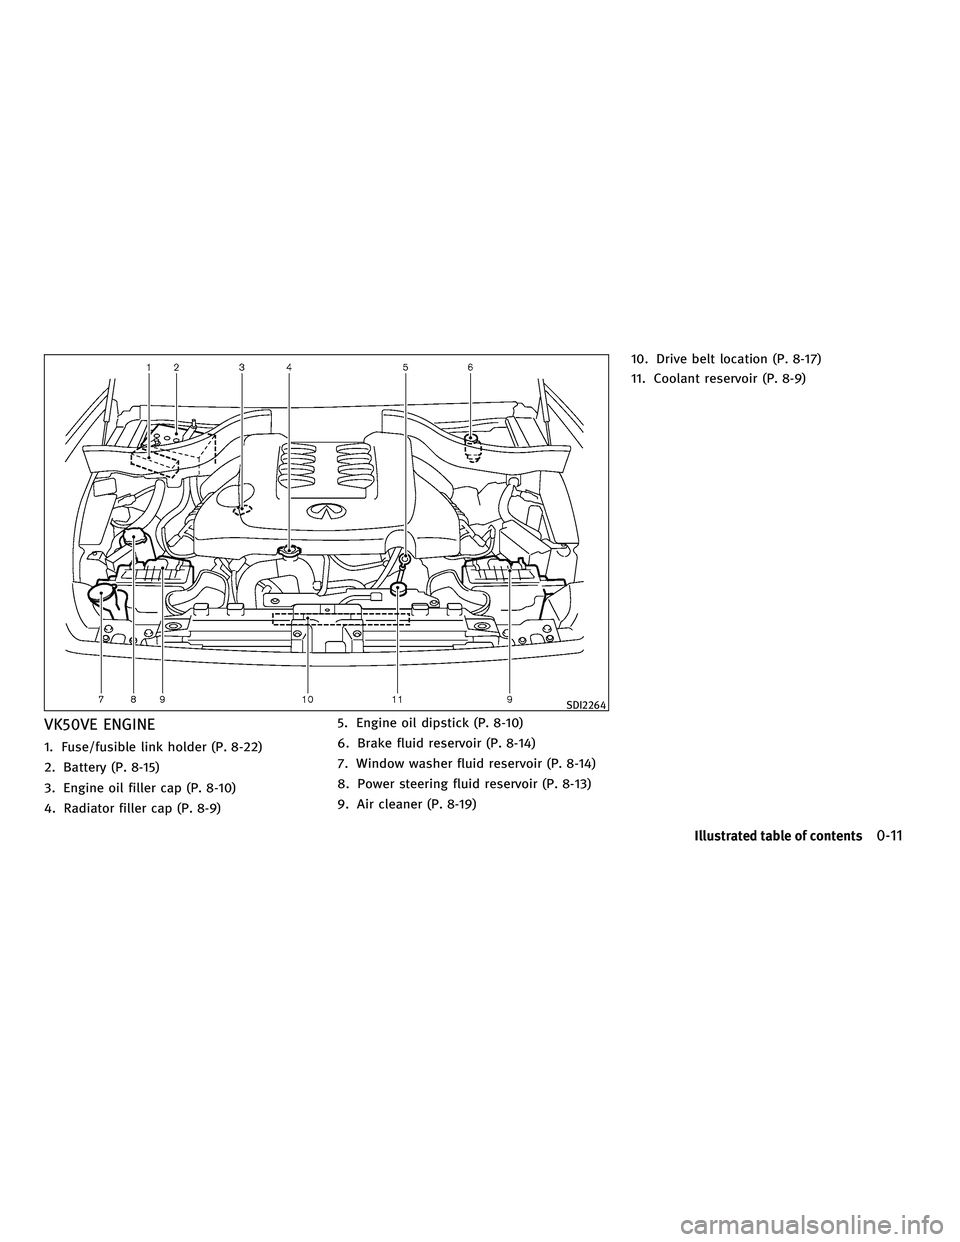 INFINITI FX 2010  Owners Manual VK50VE ENGINE
1. Fuse/fusible link holder (P. 8-22)
2. Battery (P. 8-15)
3. Engine oil filler cap (P. 8-10)
4. Radiator filler cap (P. 8-9)5. Engine oil dipstick (P. 8-10)
6. Brake fluid reservoir (P.